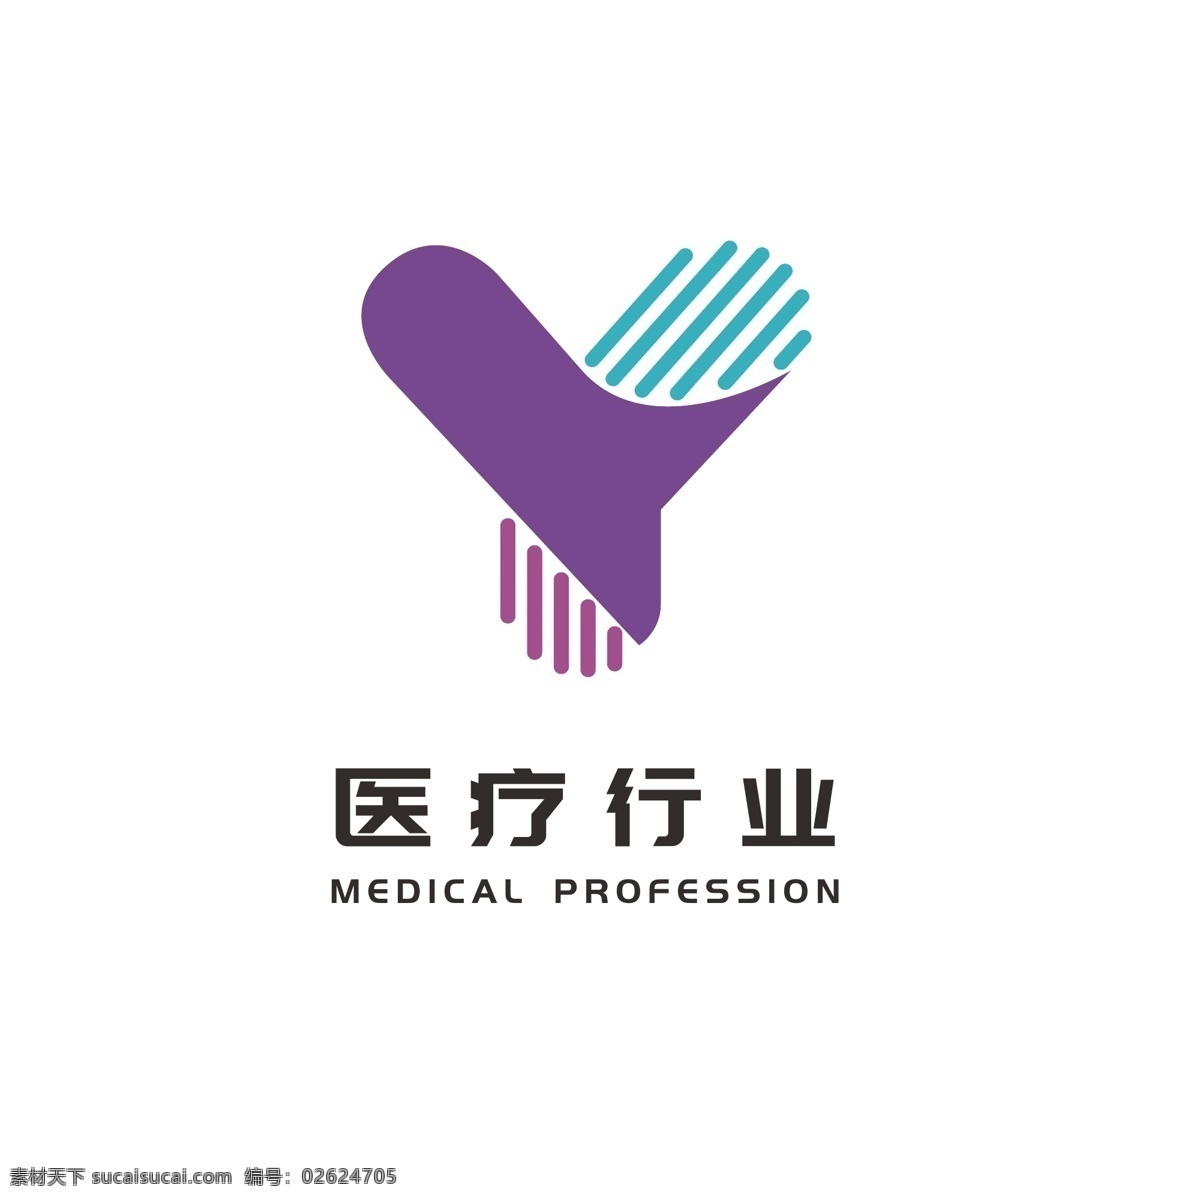 医疗 行业 卫生保健 医药 logo 大众 通用 标志 渐变 小手 大众logo 通用logo 简约logo 时尚logo 医疗卫生